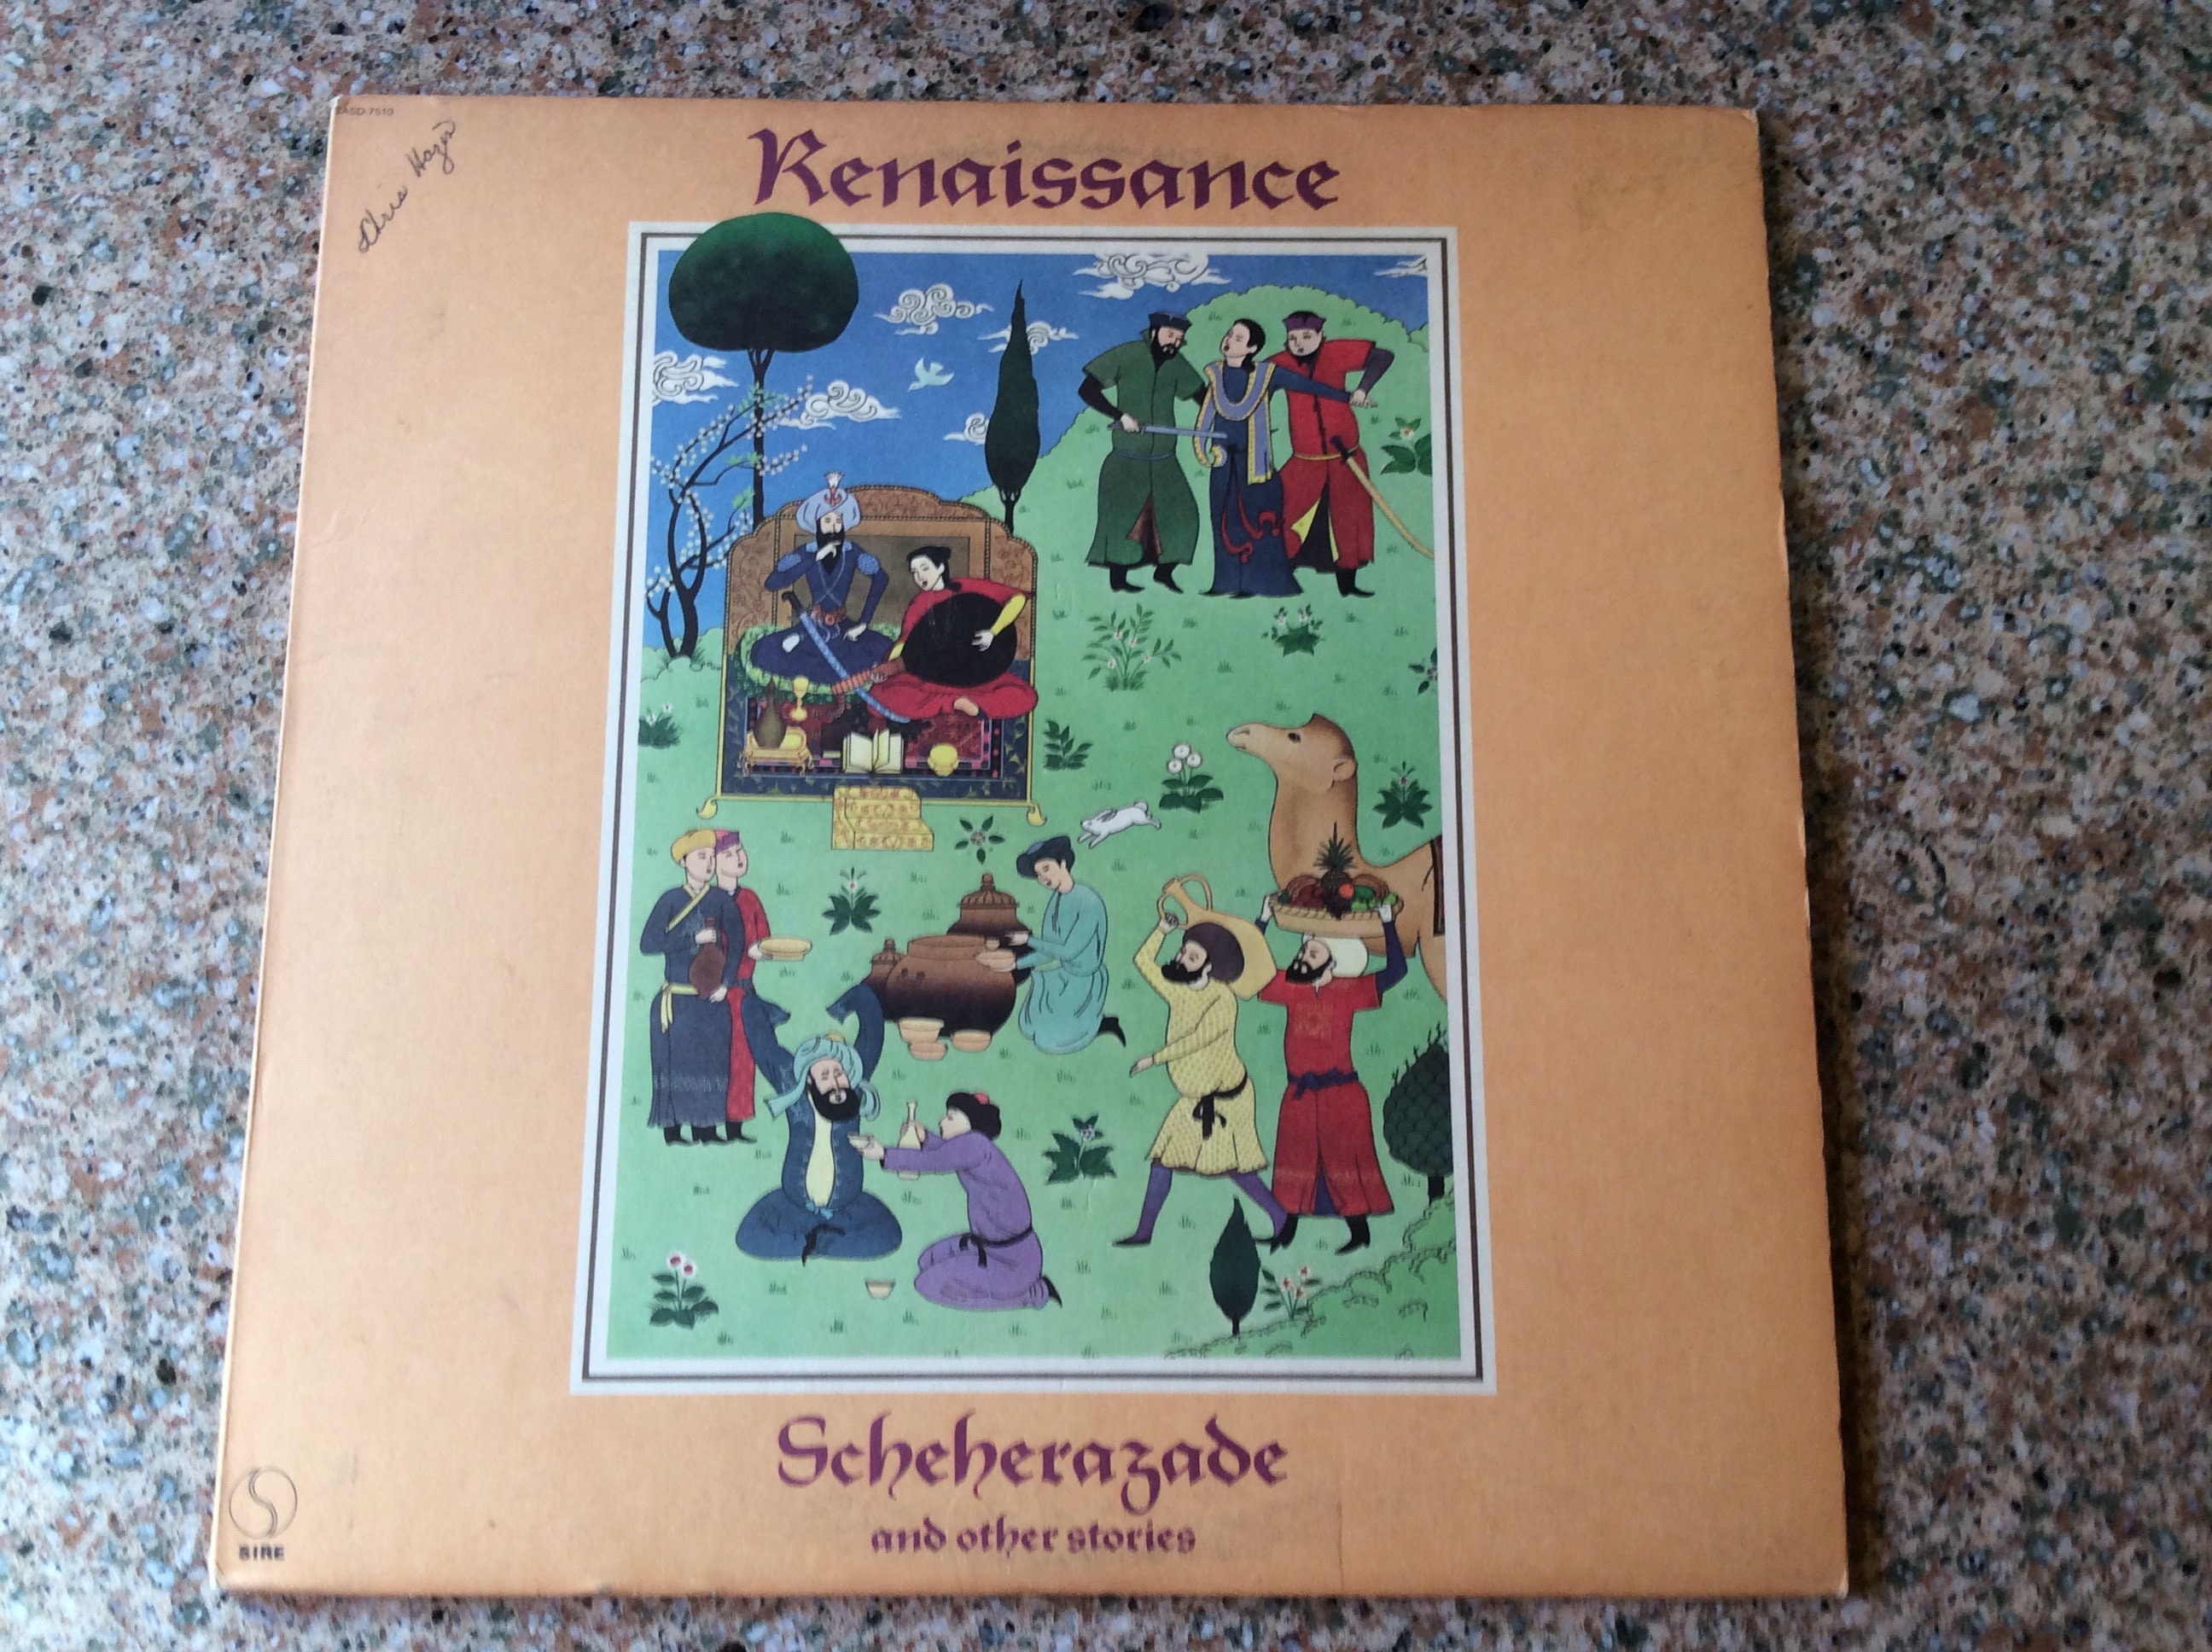 Renaissance Scheherazade Vinyl Album | Etsy